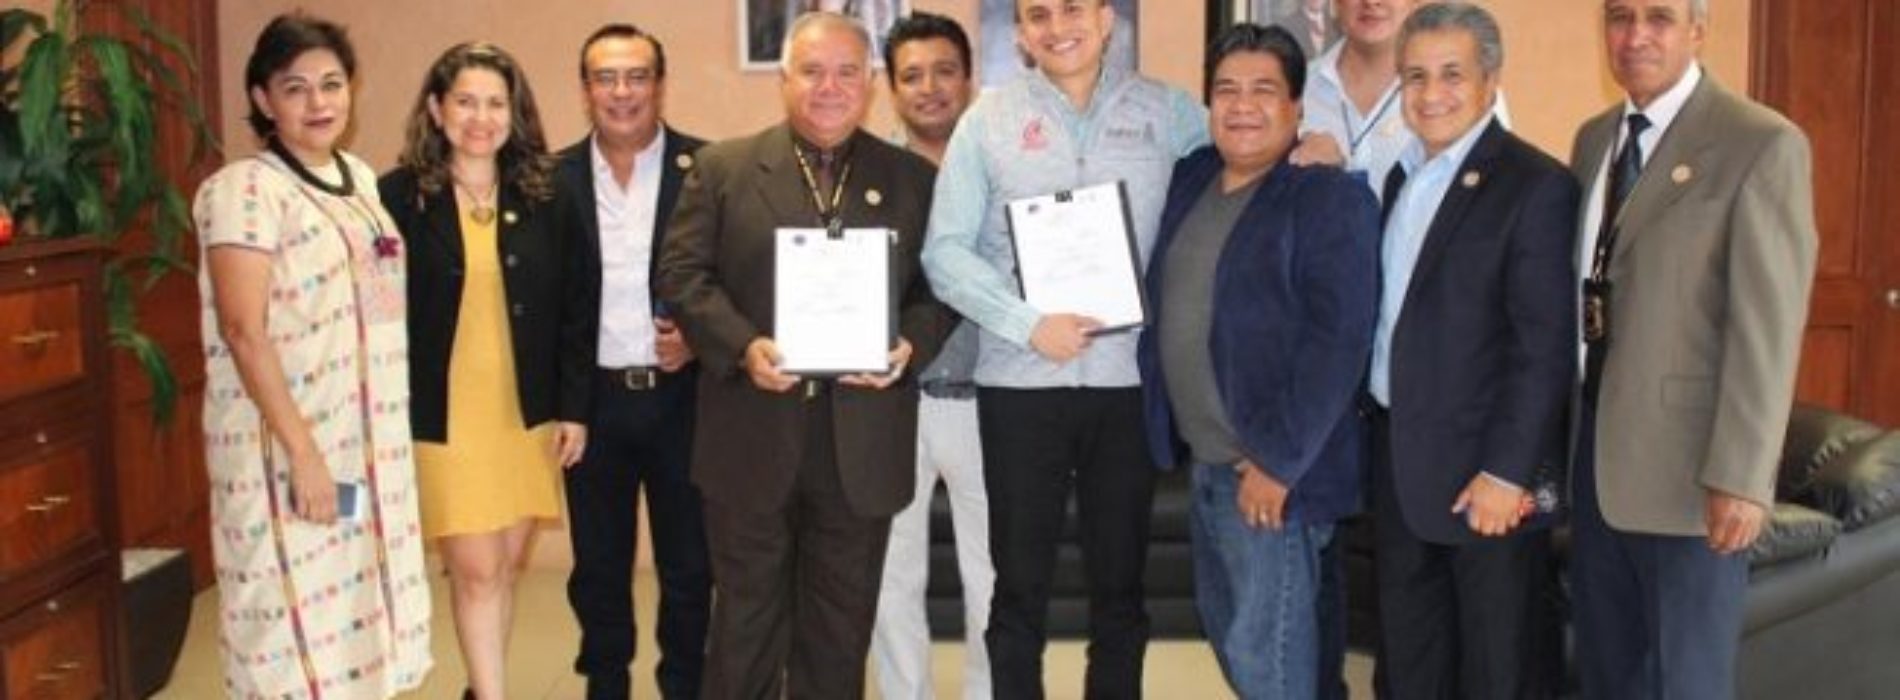 Firma de convenio de la Comisión Iberoamericana de Derechos
Humanos con el COBAO